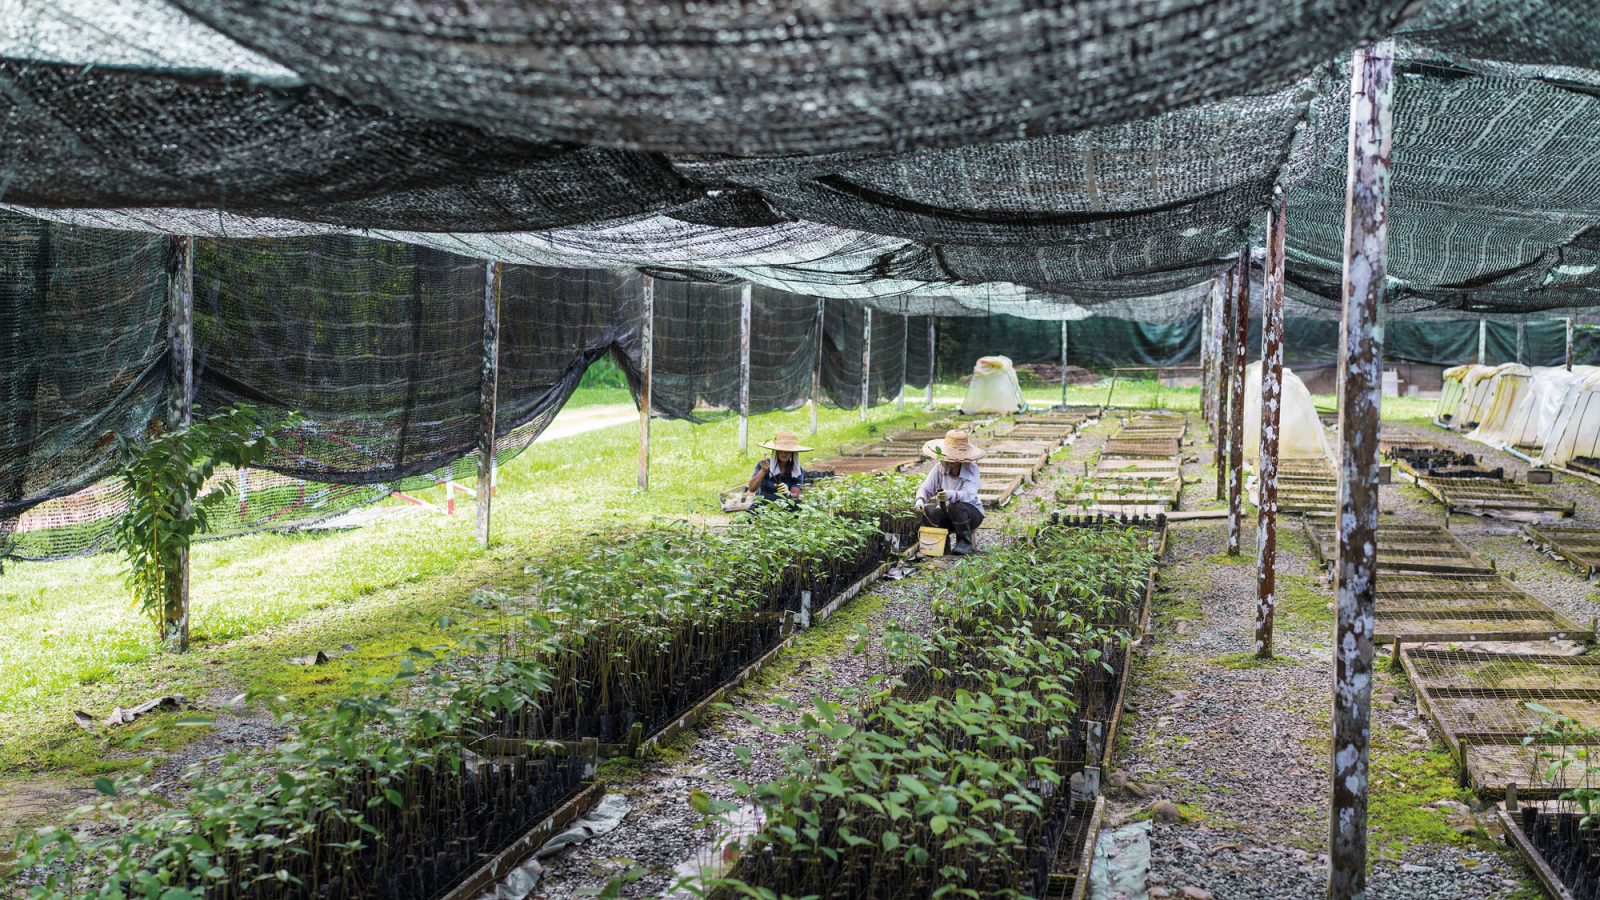 Två personer iklädda stora stråhattar arbetar med plantor i återplanteringsbäddar under tak av nät.